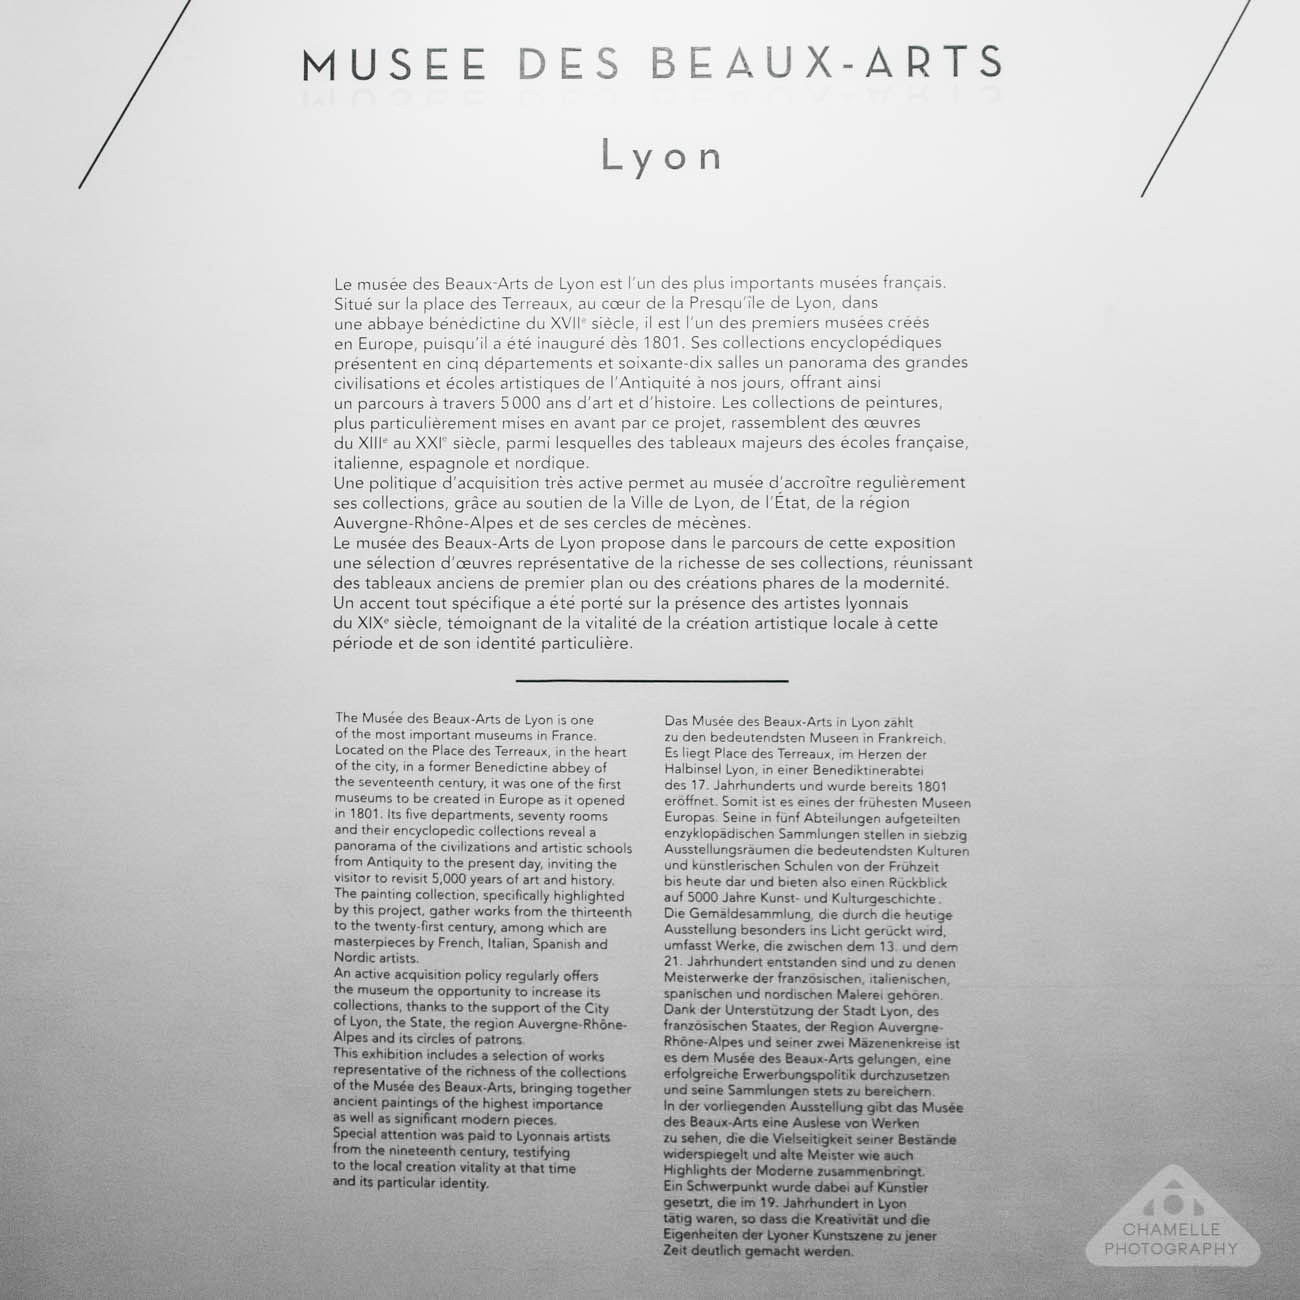 Musee des Beaux-Arts, Lyon Fine arts museum Rembrandt self exhibition exposition